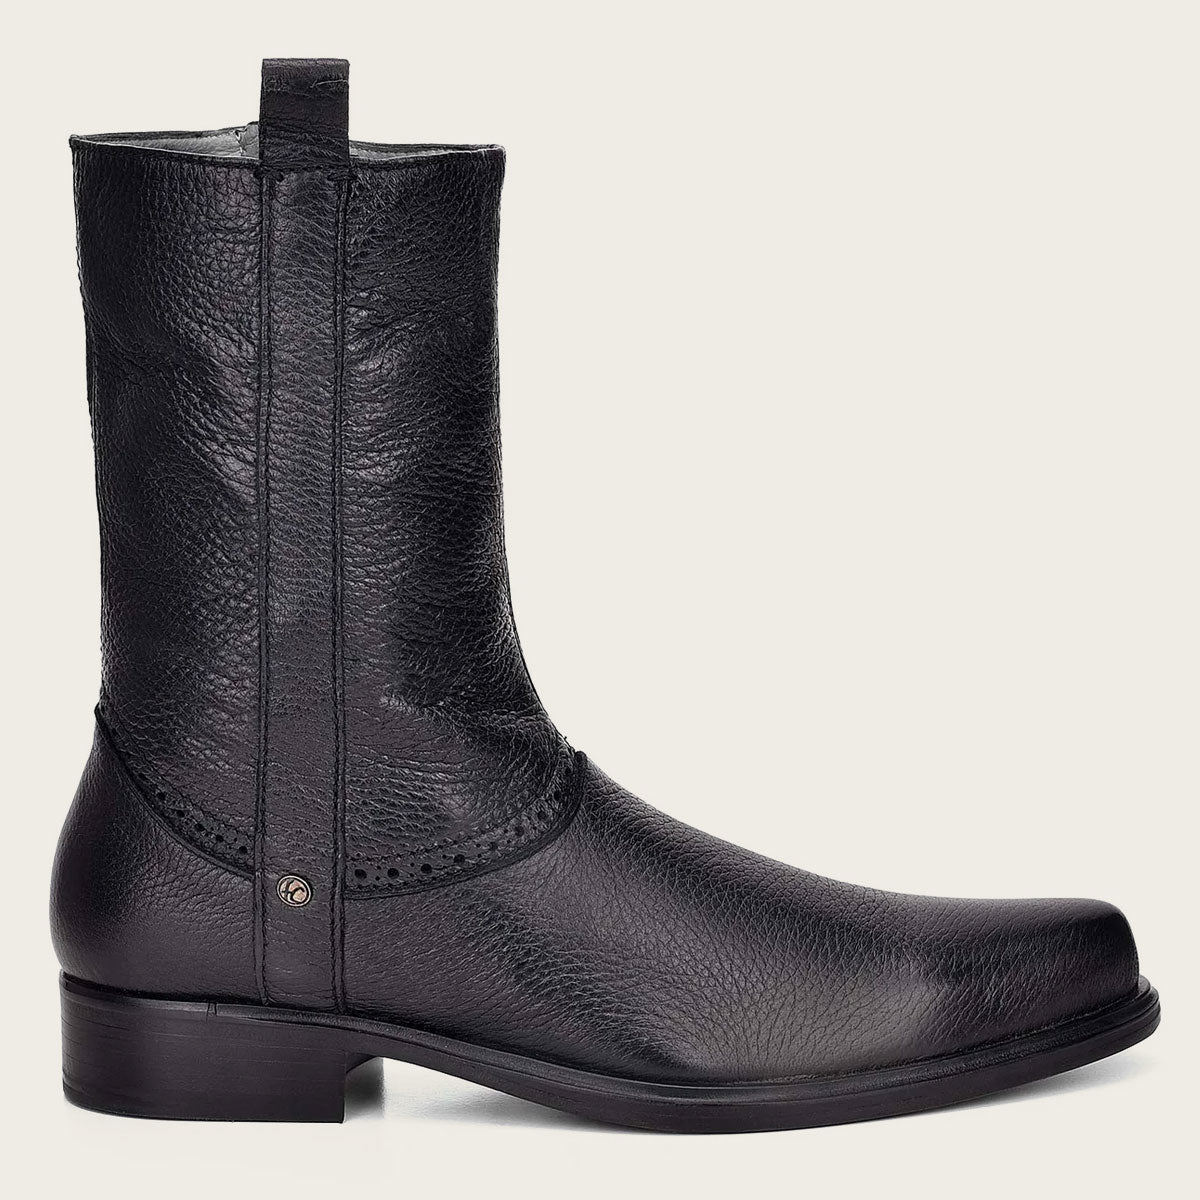 Black Cuadra dress boot for men in genuine deer leather with broguing details - 801VNVN - Cuadra Shop